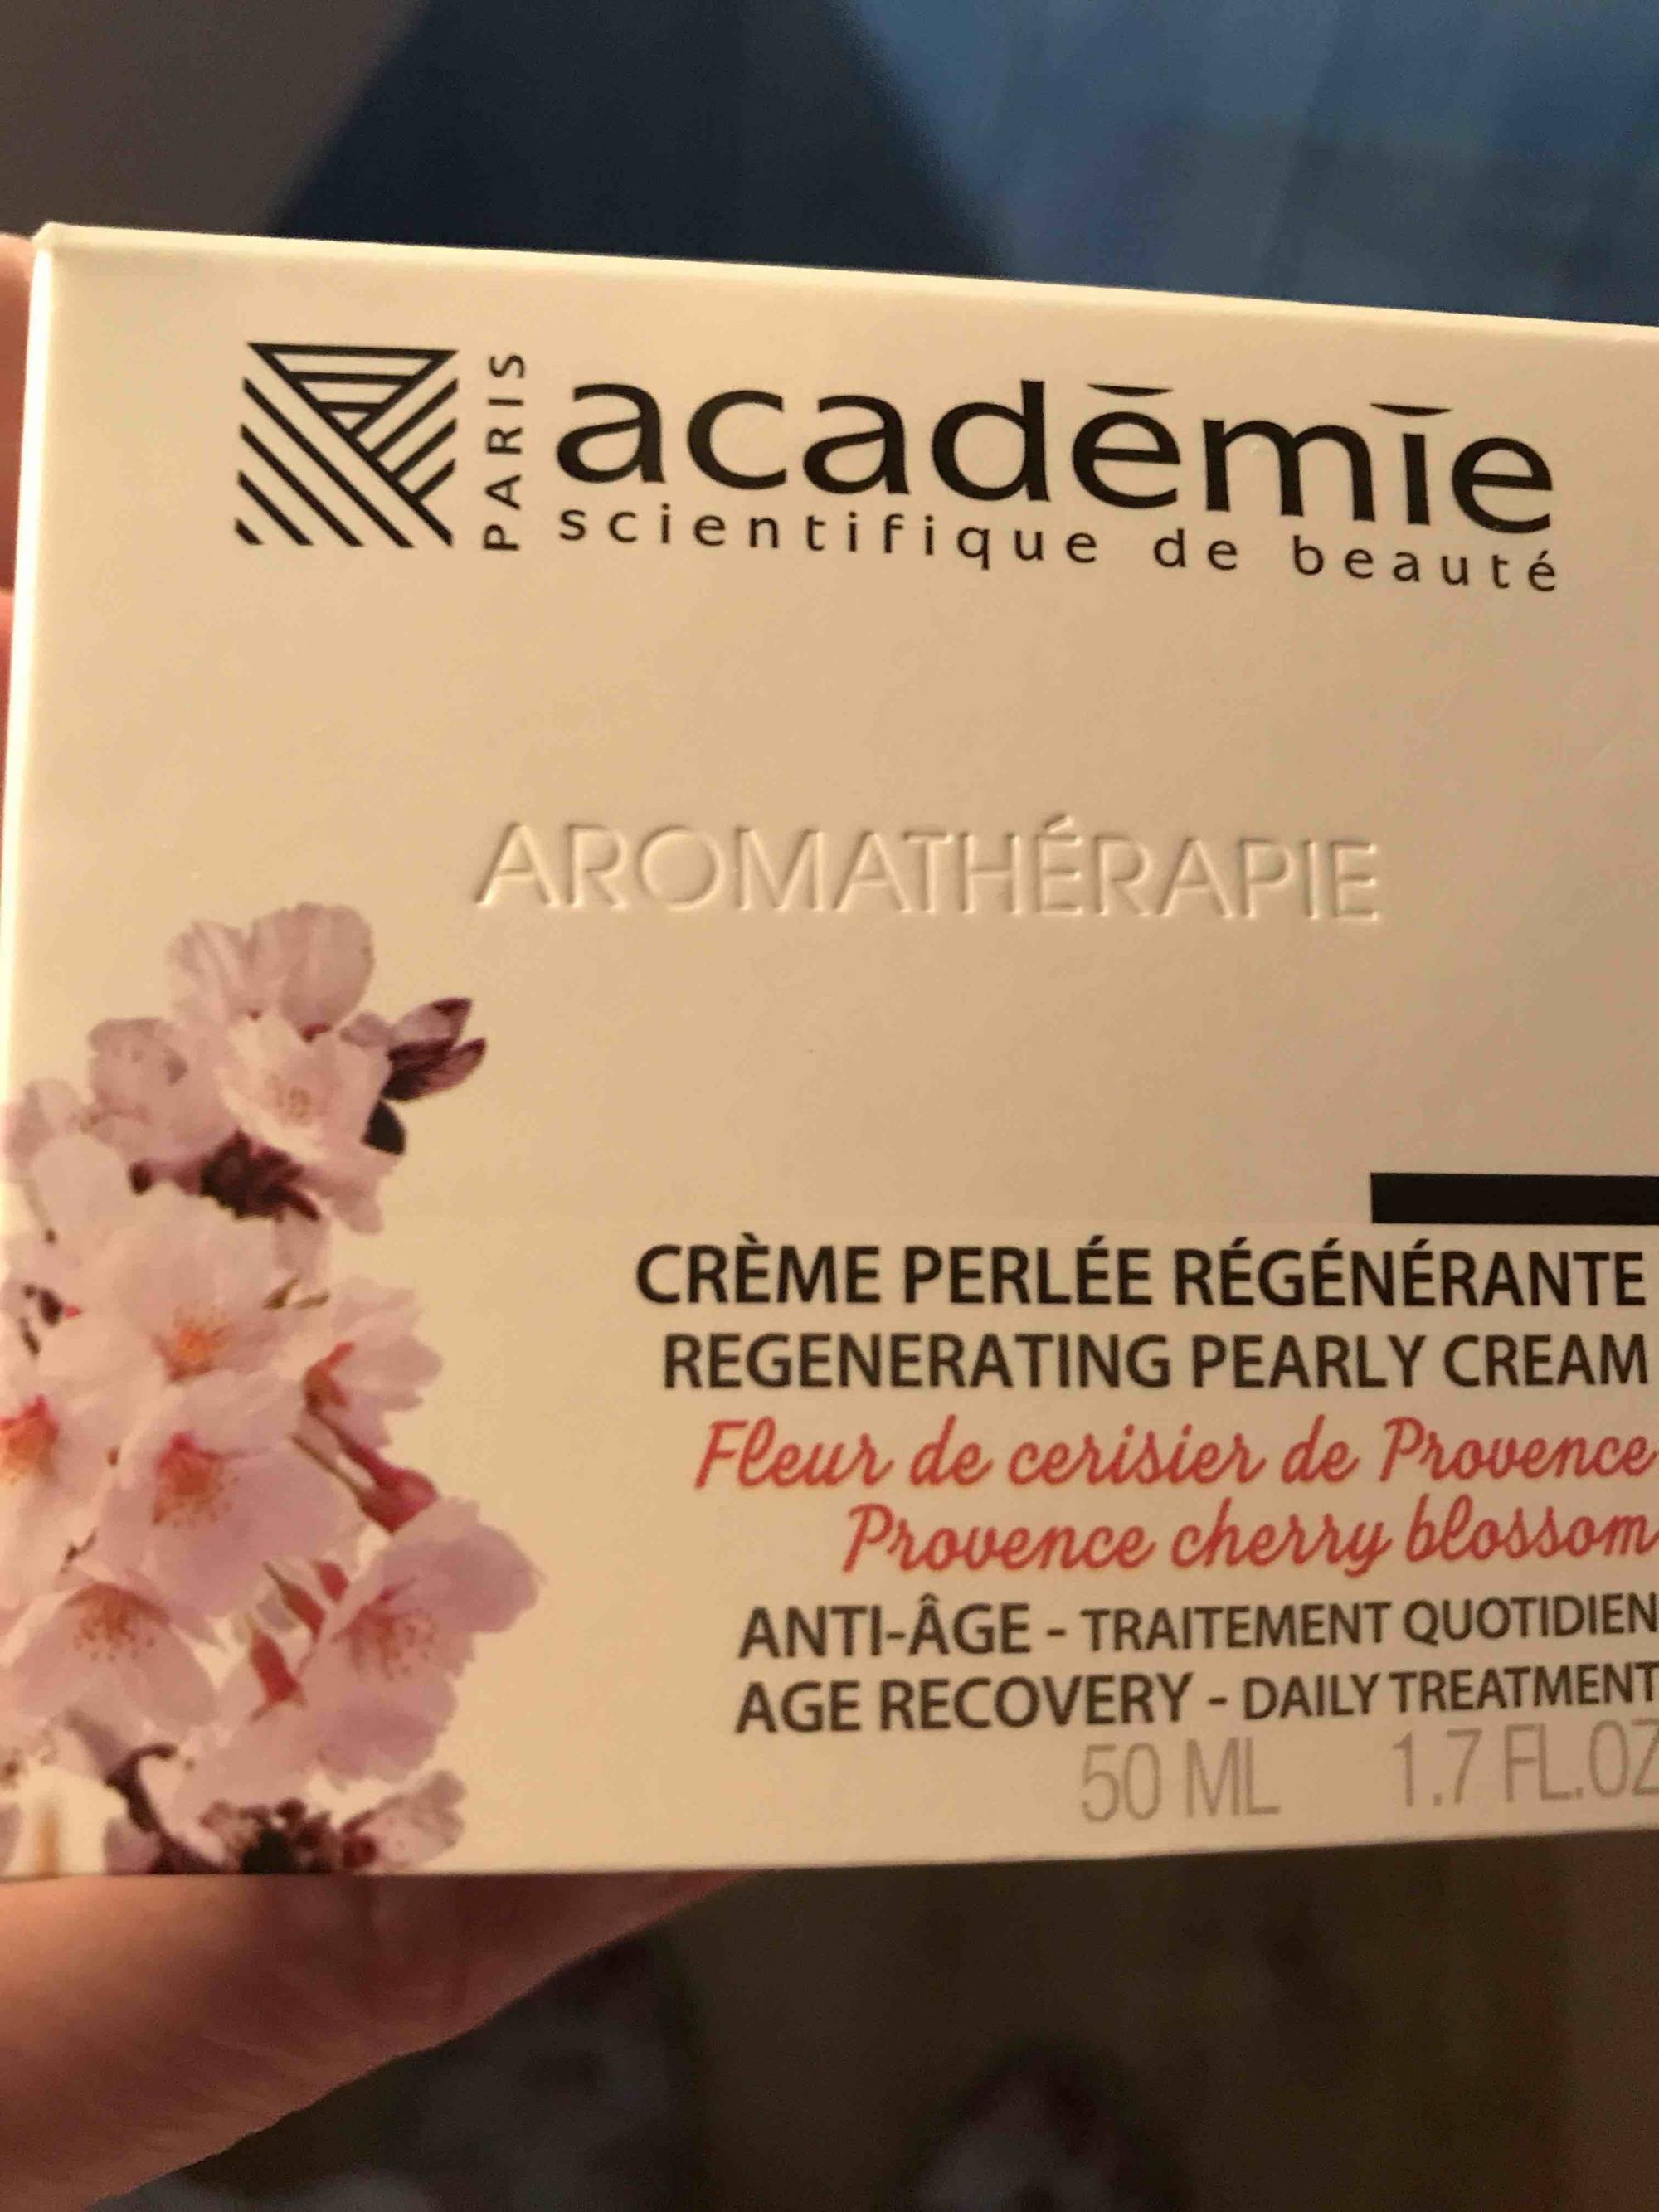 ACADÉMIE SCIENTIFIQUE DE BEAUTÉ - Aromathérapie - Crème perlée régénérante anti-âge